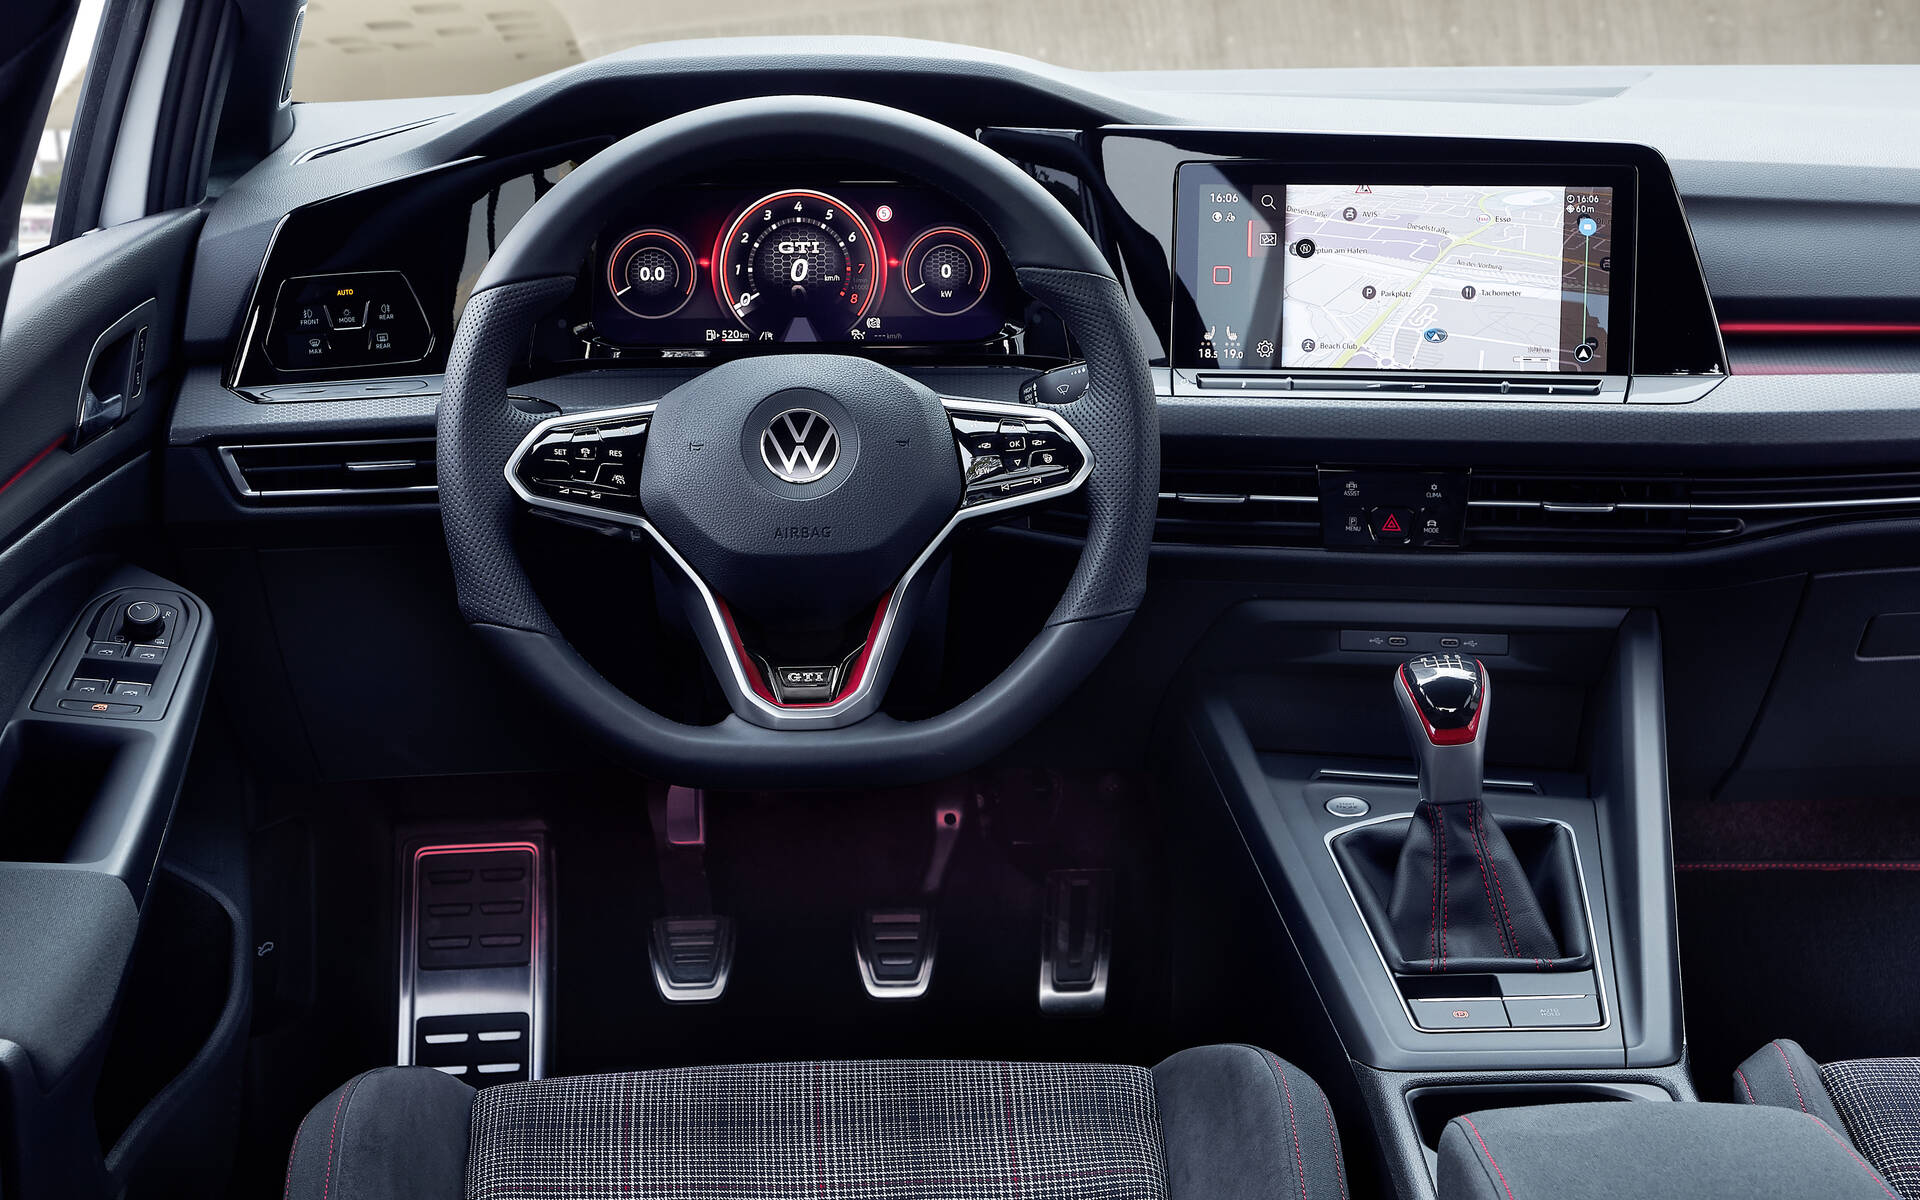 La Volkswagen Golf GTI d’hier à aujourd’hui 503954-la-volkswagen-golf-gti-d-hier-a-aujourd-hui